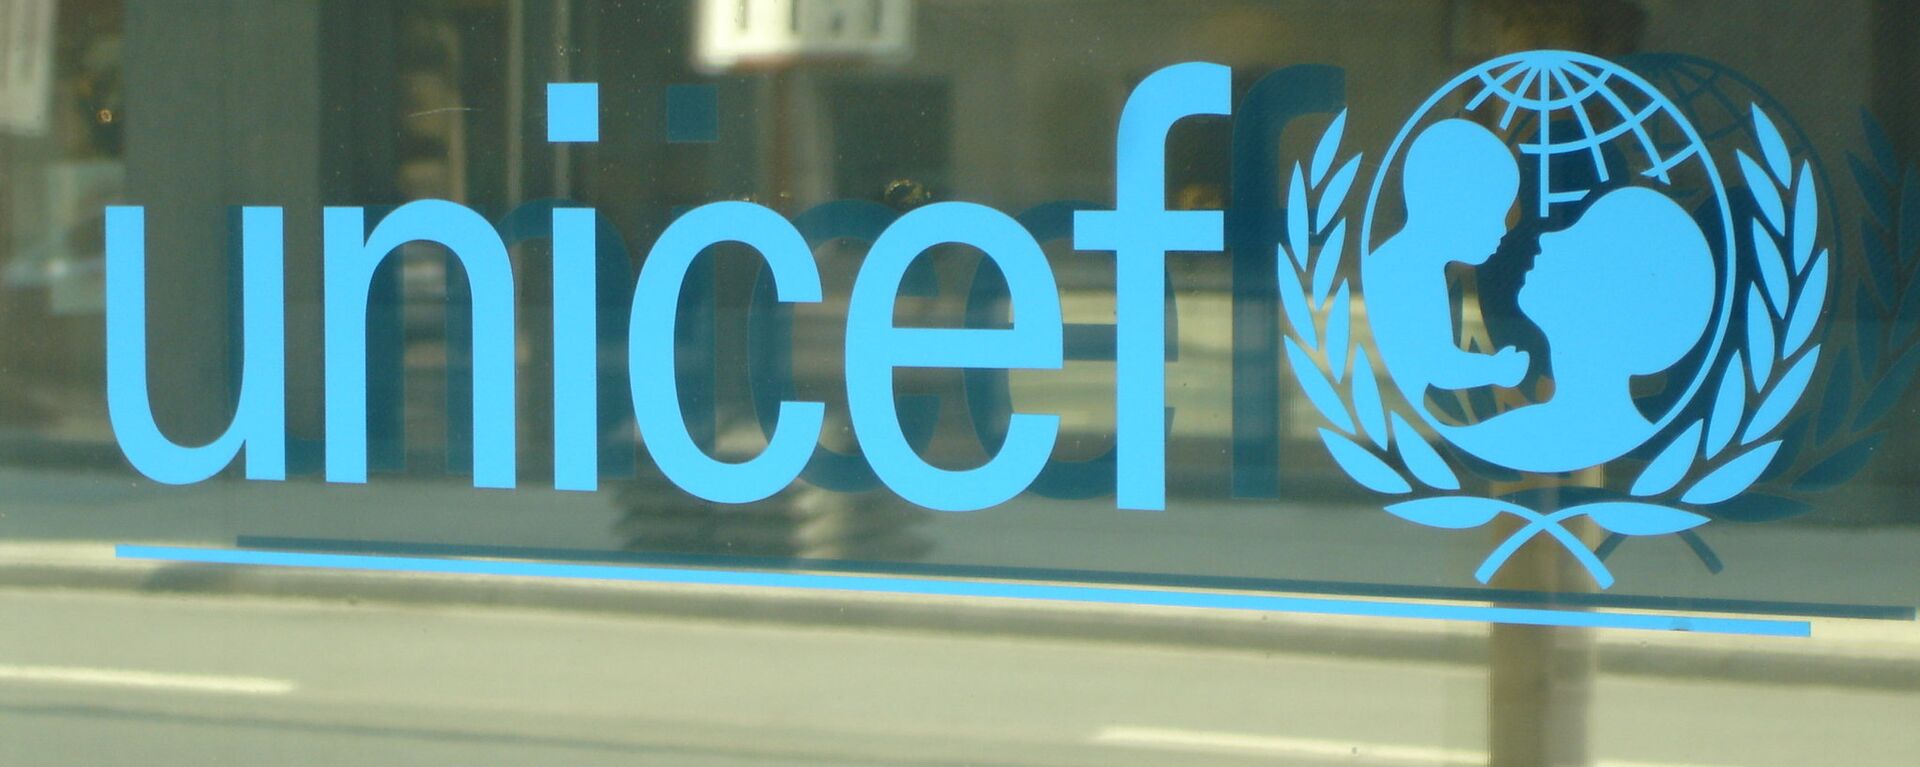 El logo de UNICEF - Sputnik Mundo, 1920, 29.12.2021